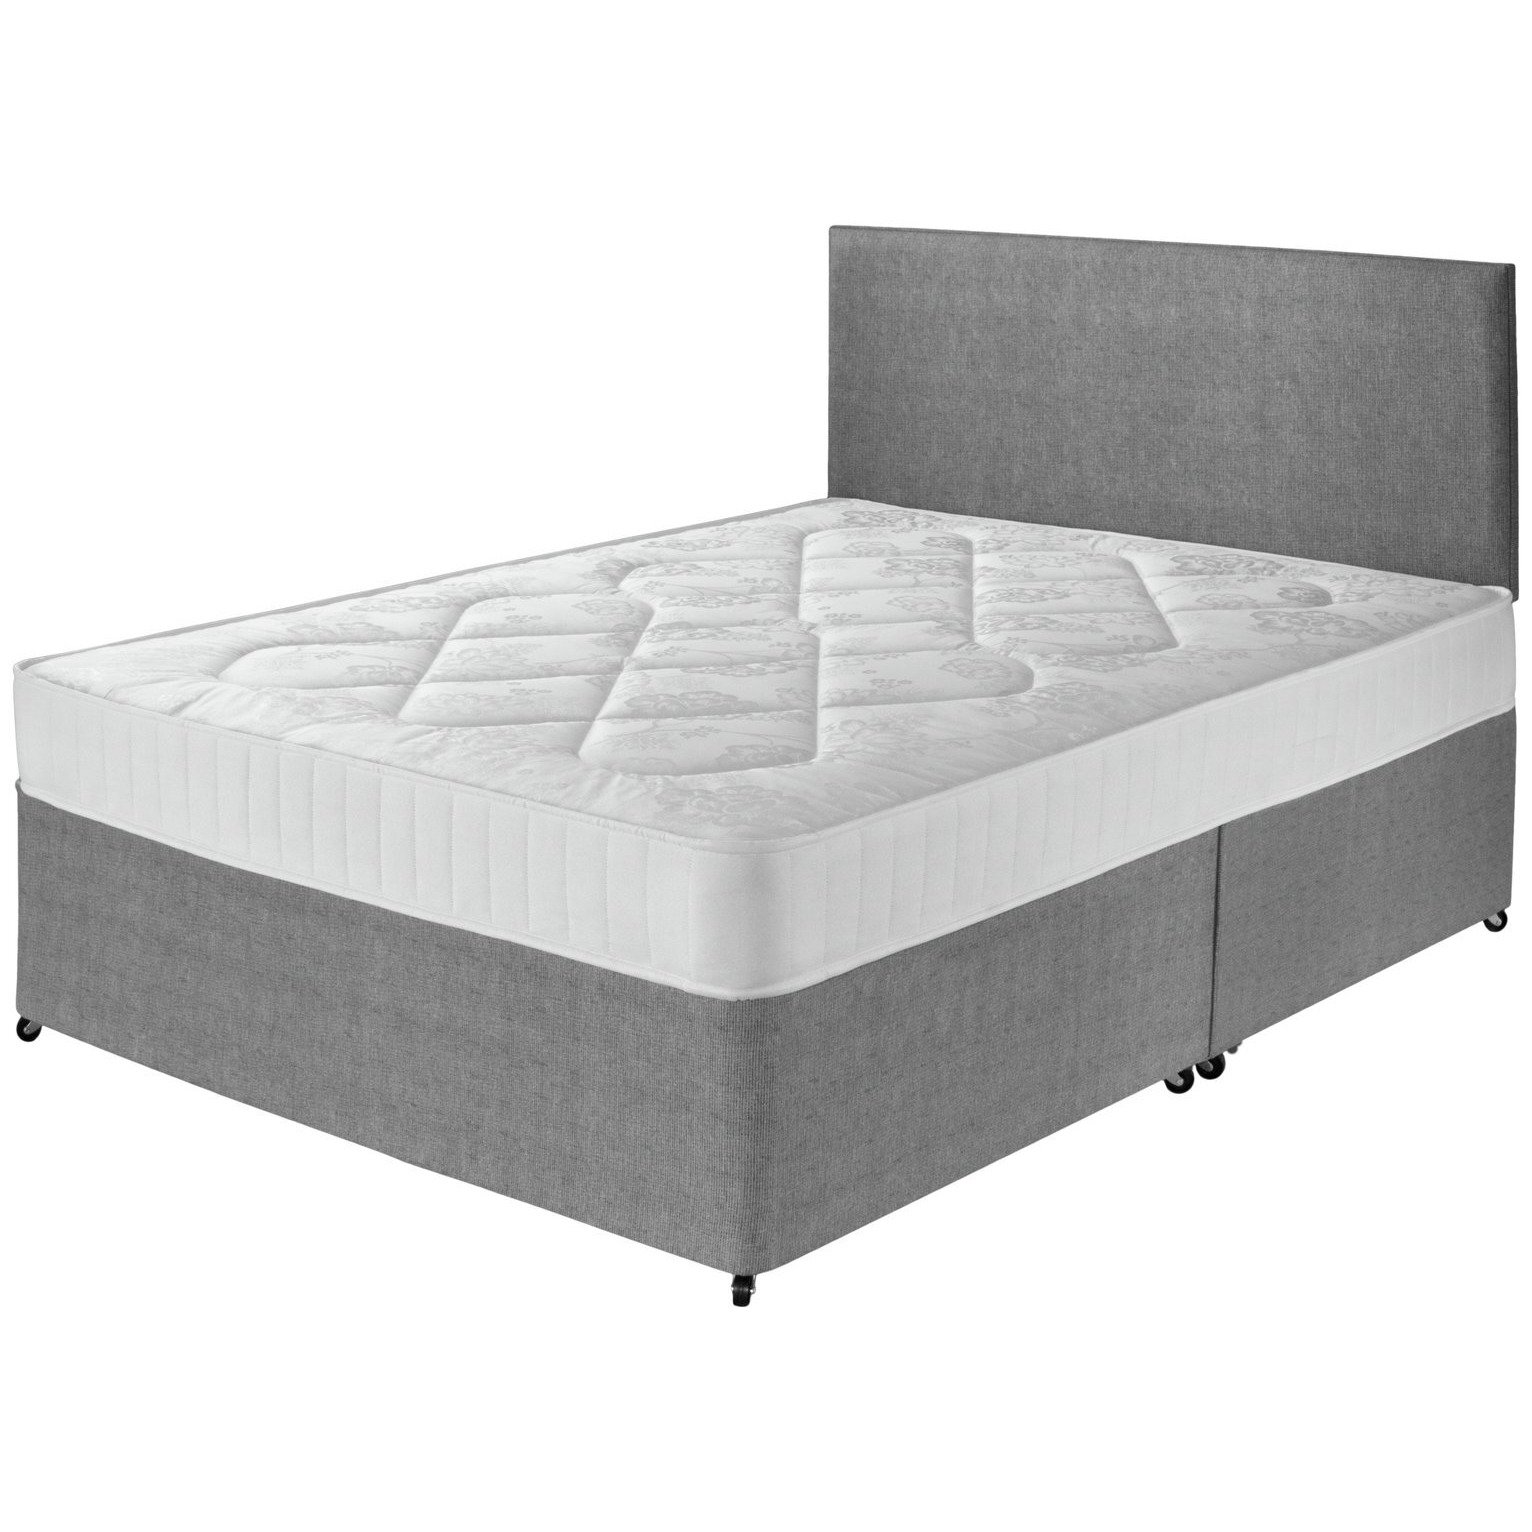 Argos Home Elmdon Comfort Small Double Divan Bed - Grey - image 1